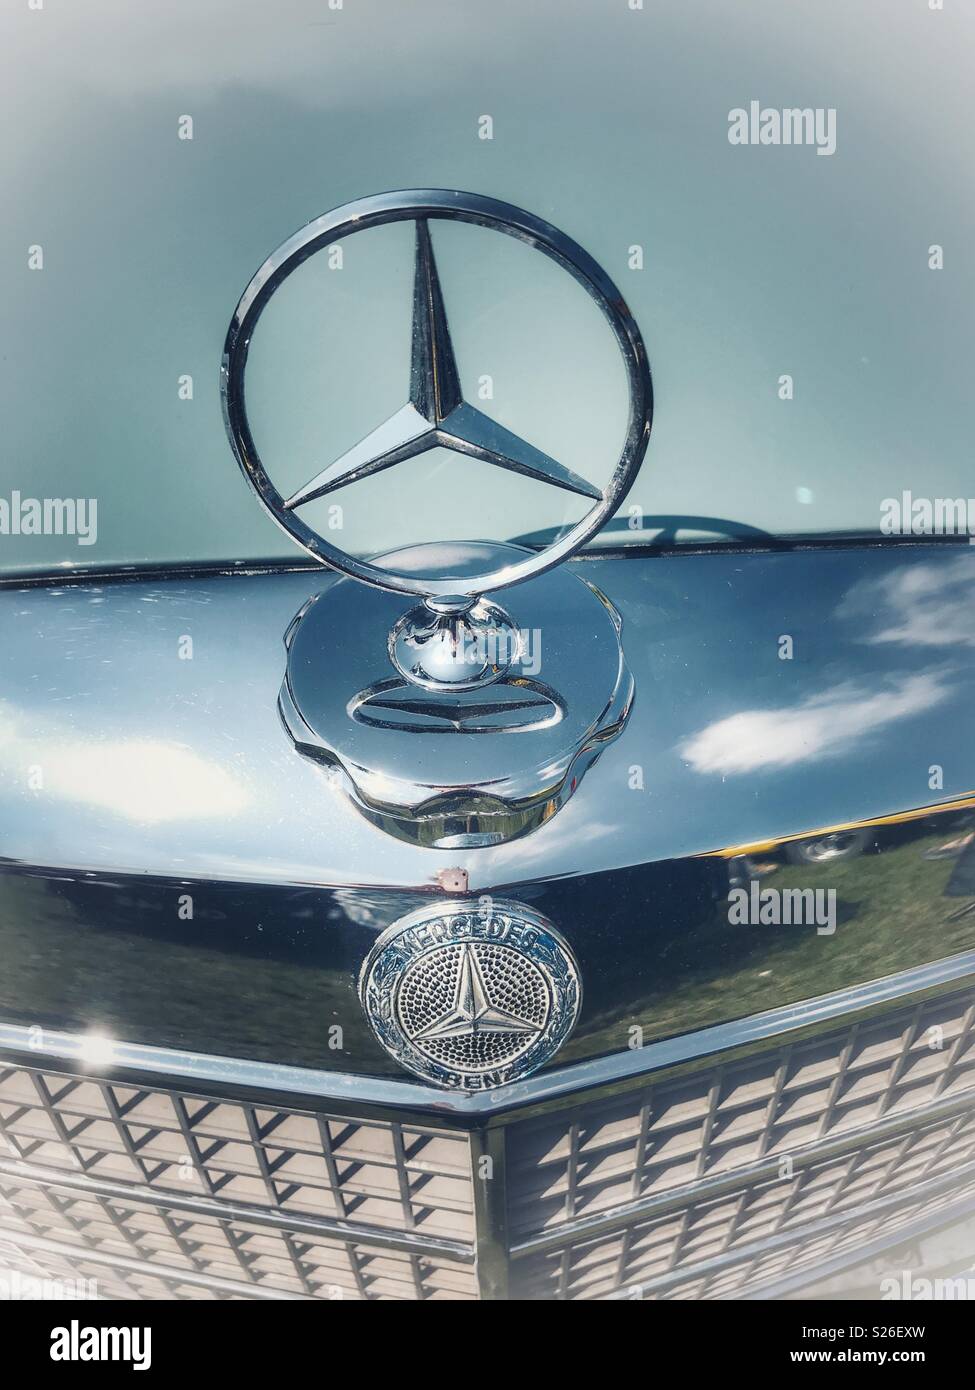 Classic & Auto d'epoca, Mercedes Benz, cofano e dettagli cromati Foto Stock